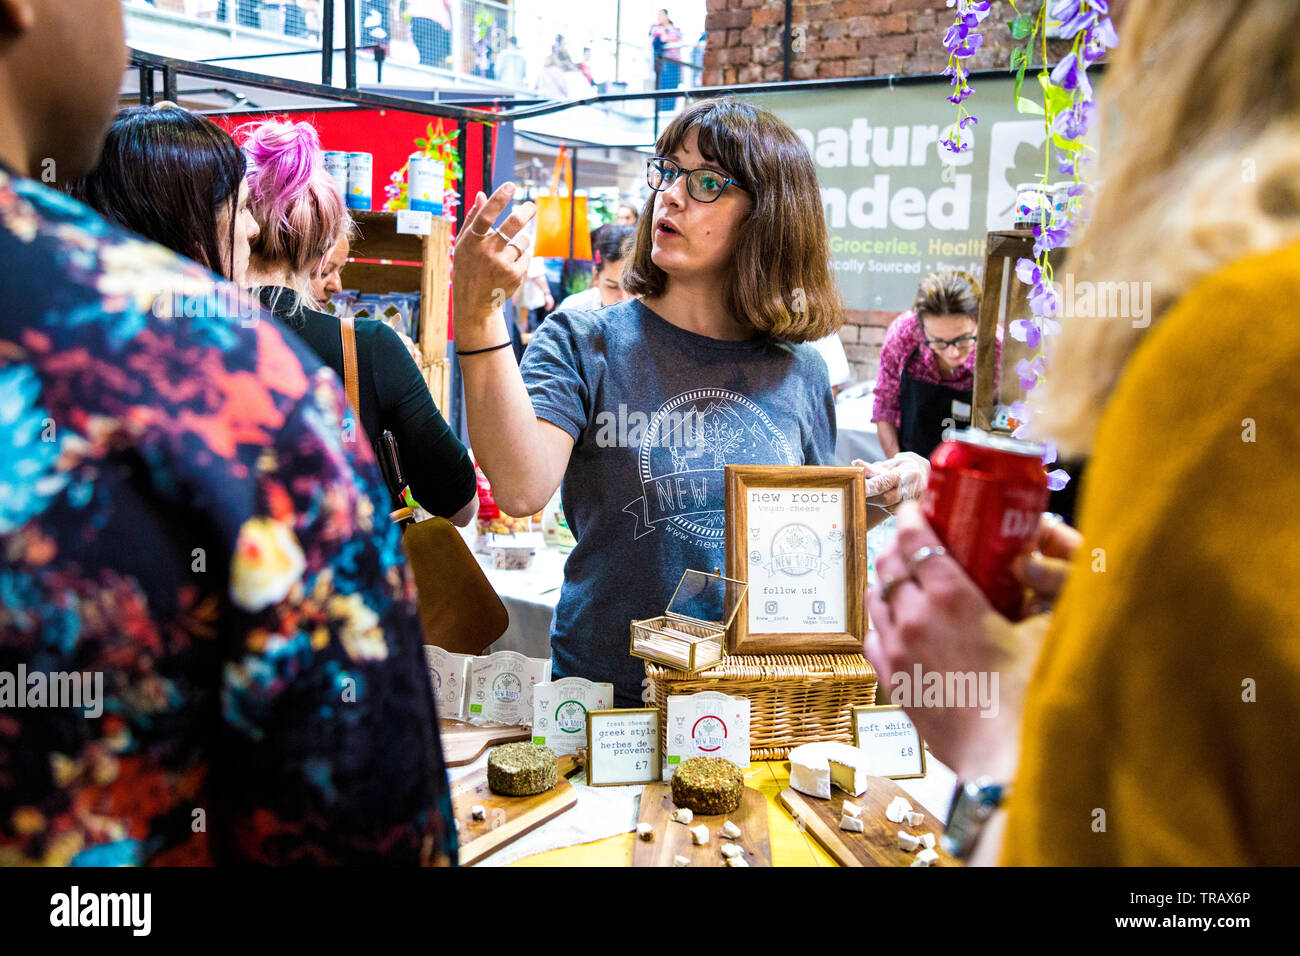 27 mai 2019 l'abri de nouvelles racines Festival stand fromage vegan, femme à lunettes parle de produits, la chaufferie, London, UK Banque D'Images